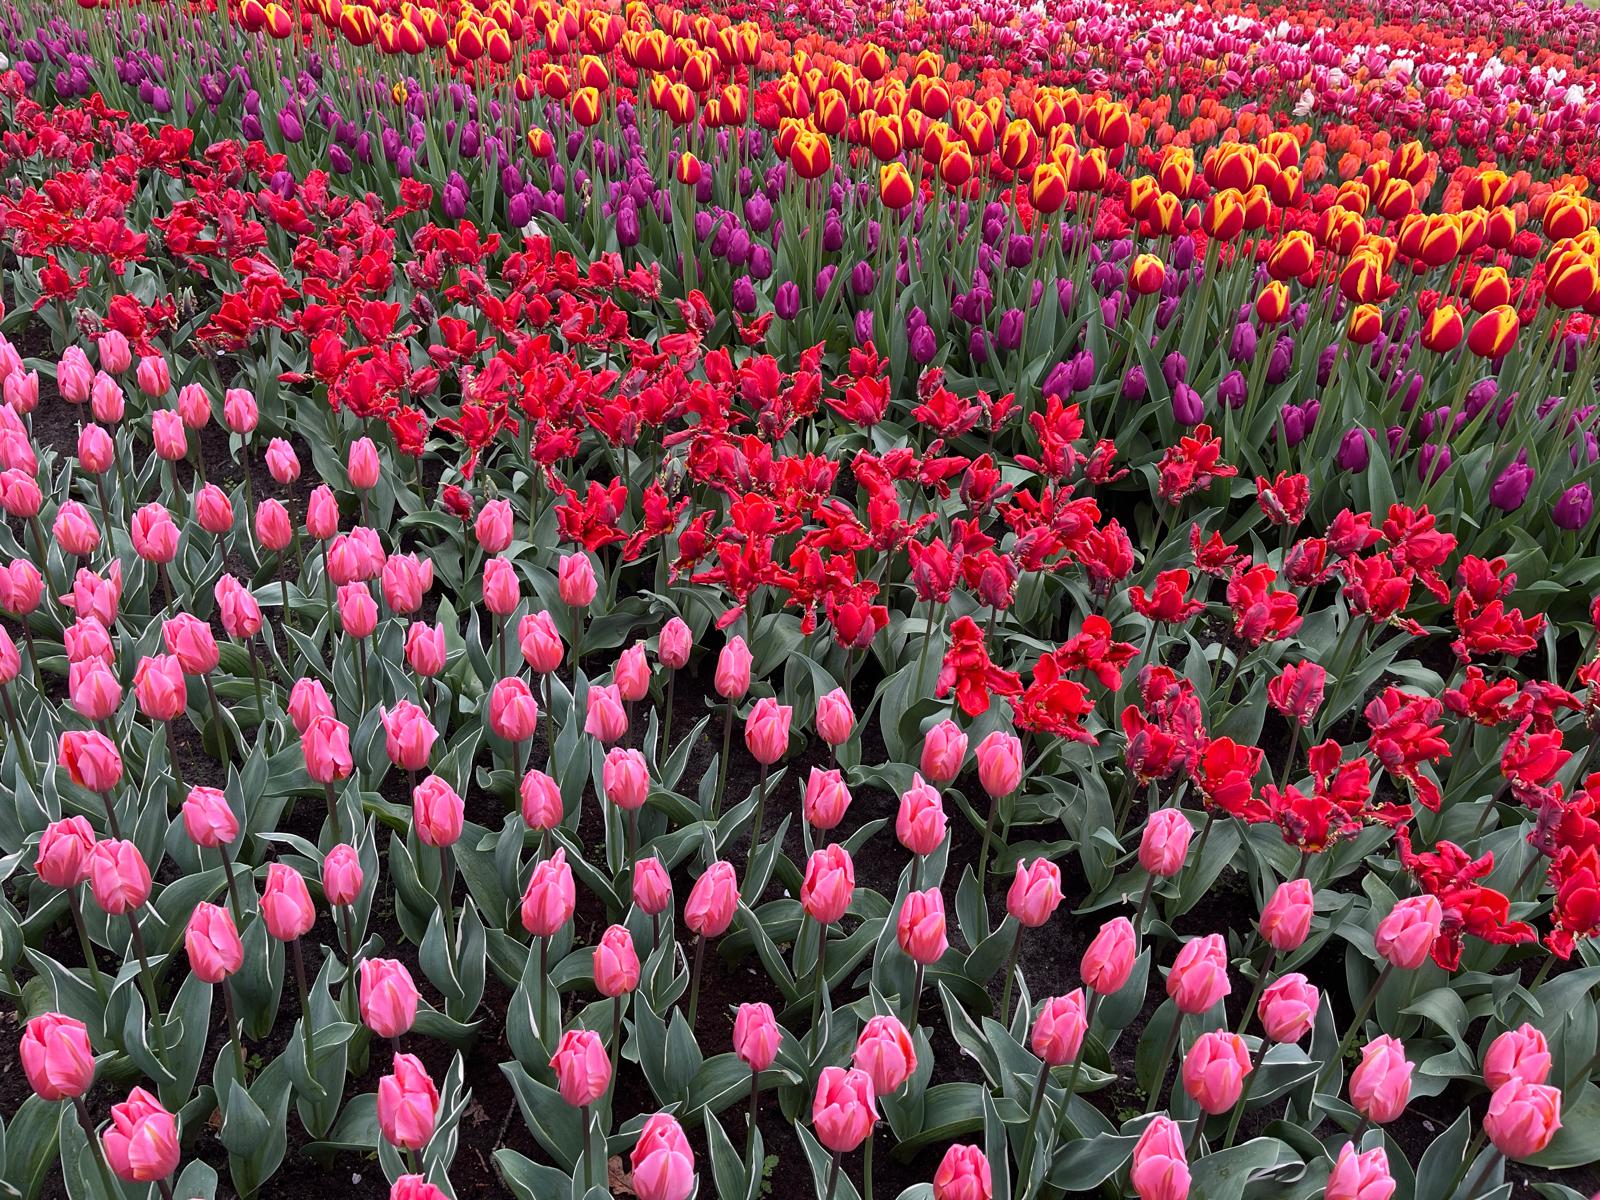 Tulpen in Rosa, Rot, Lila, Rot-Gelb, Orangerot und Pink - von unten links nach oben rechts gesehen